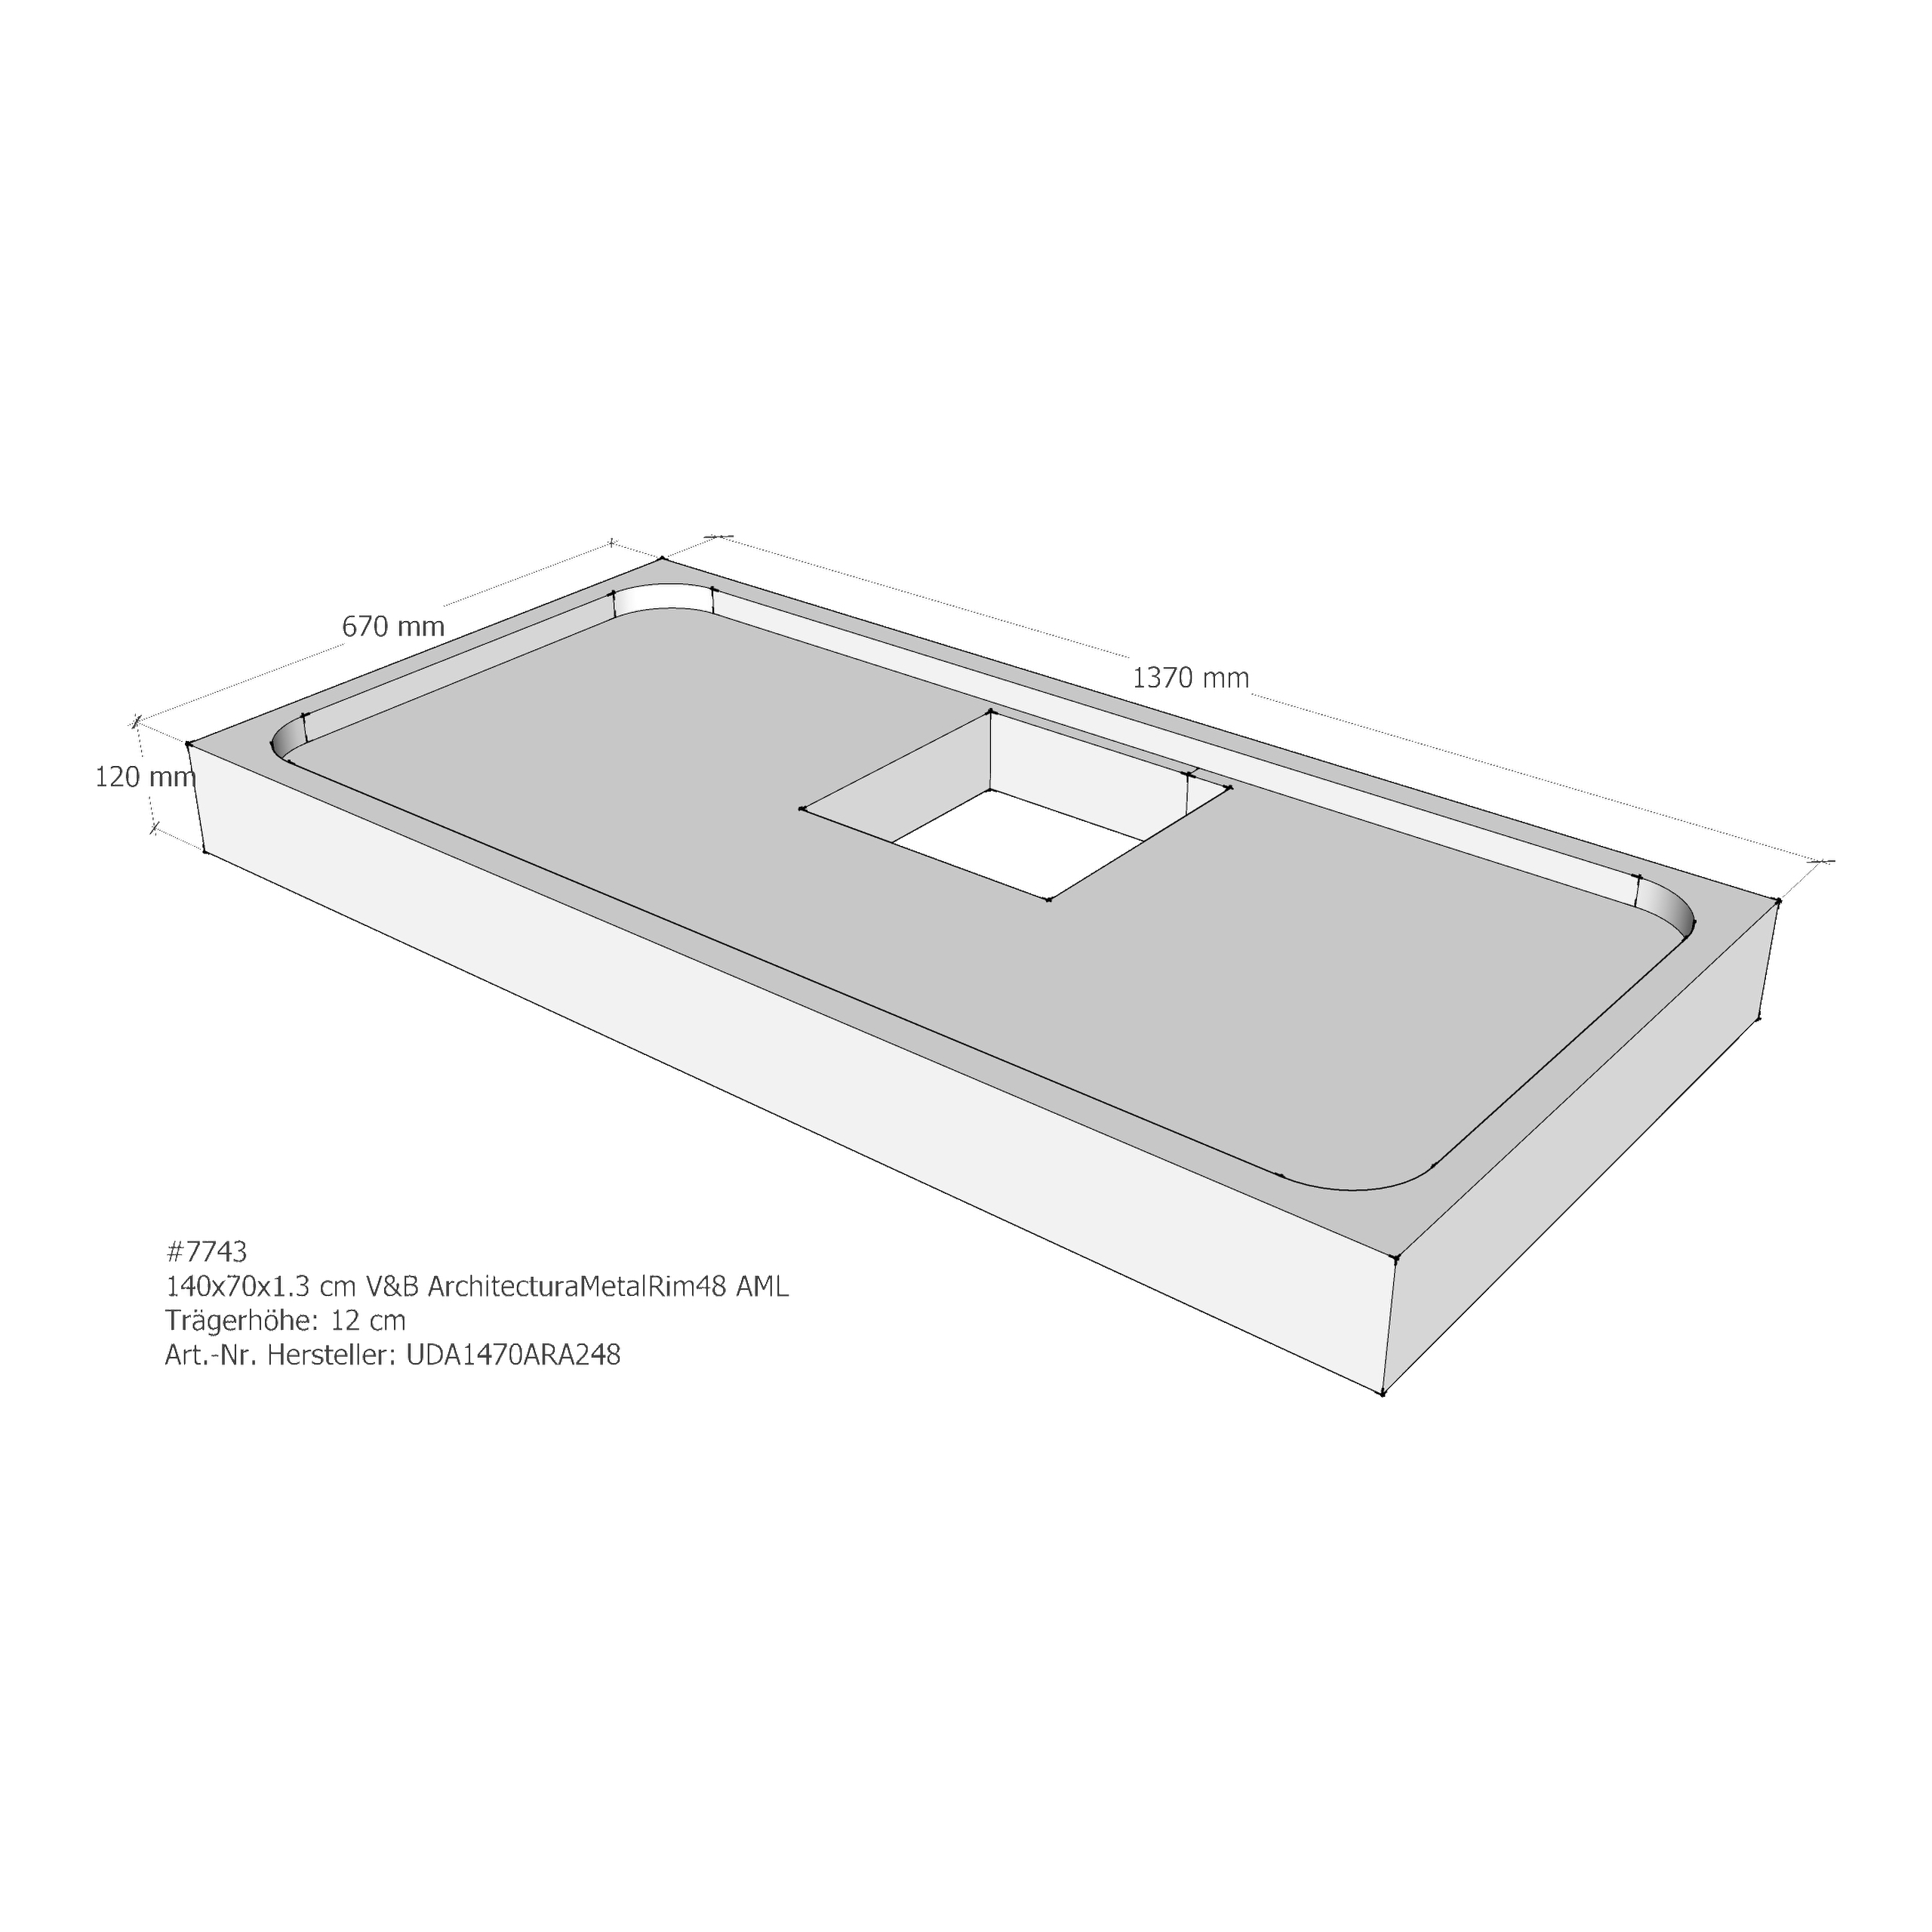 Duschwannenträger für Villeroy & Boch Architectura MetalRim 140 × 70 × 1,3 cm